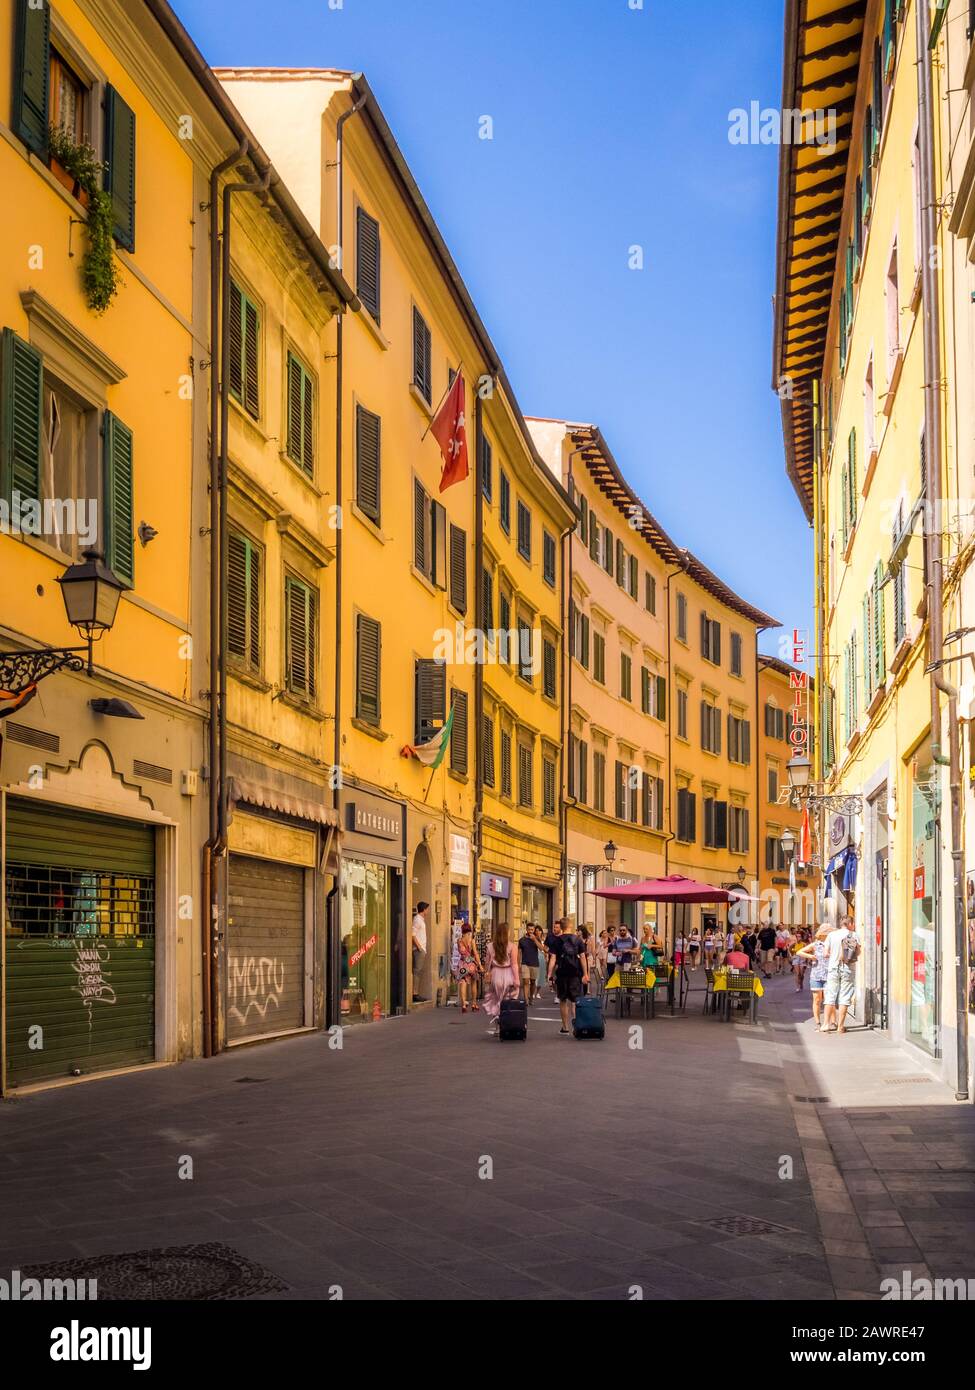 Pisa, ITALIA - Luglio 06, 2019: Via dello shopping corso Italia nel centro storico di Pisa con persone non identificate. Pisa è conosciuta in tutto il mondo per il suo traino pendente Foto Stock